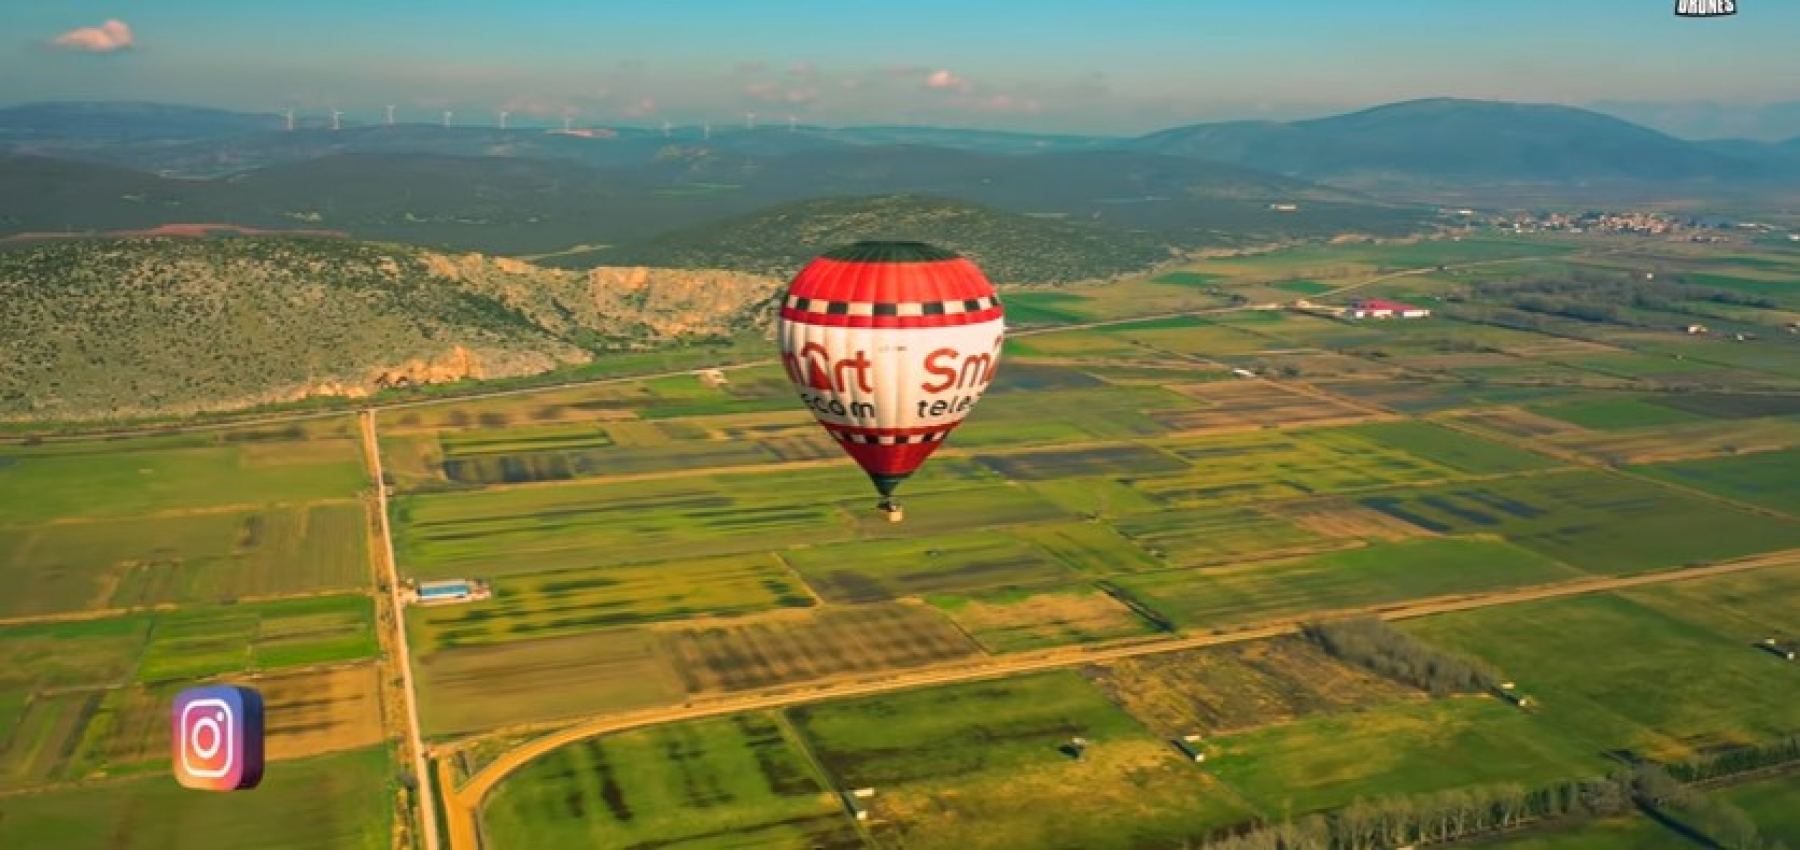 Όταν ένα αερόστατο και ένα drone συναντιούνται τυχαία - ΒΙΝΤΕΟ